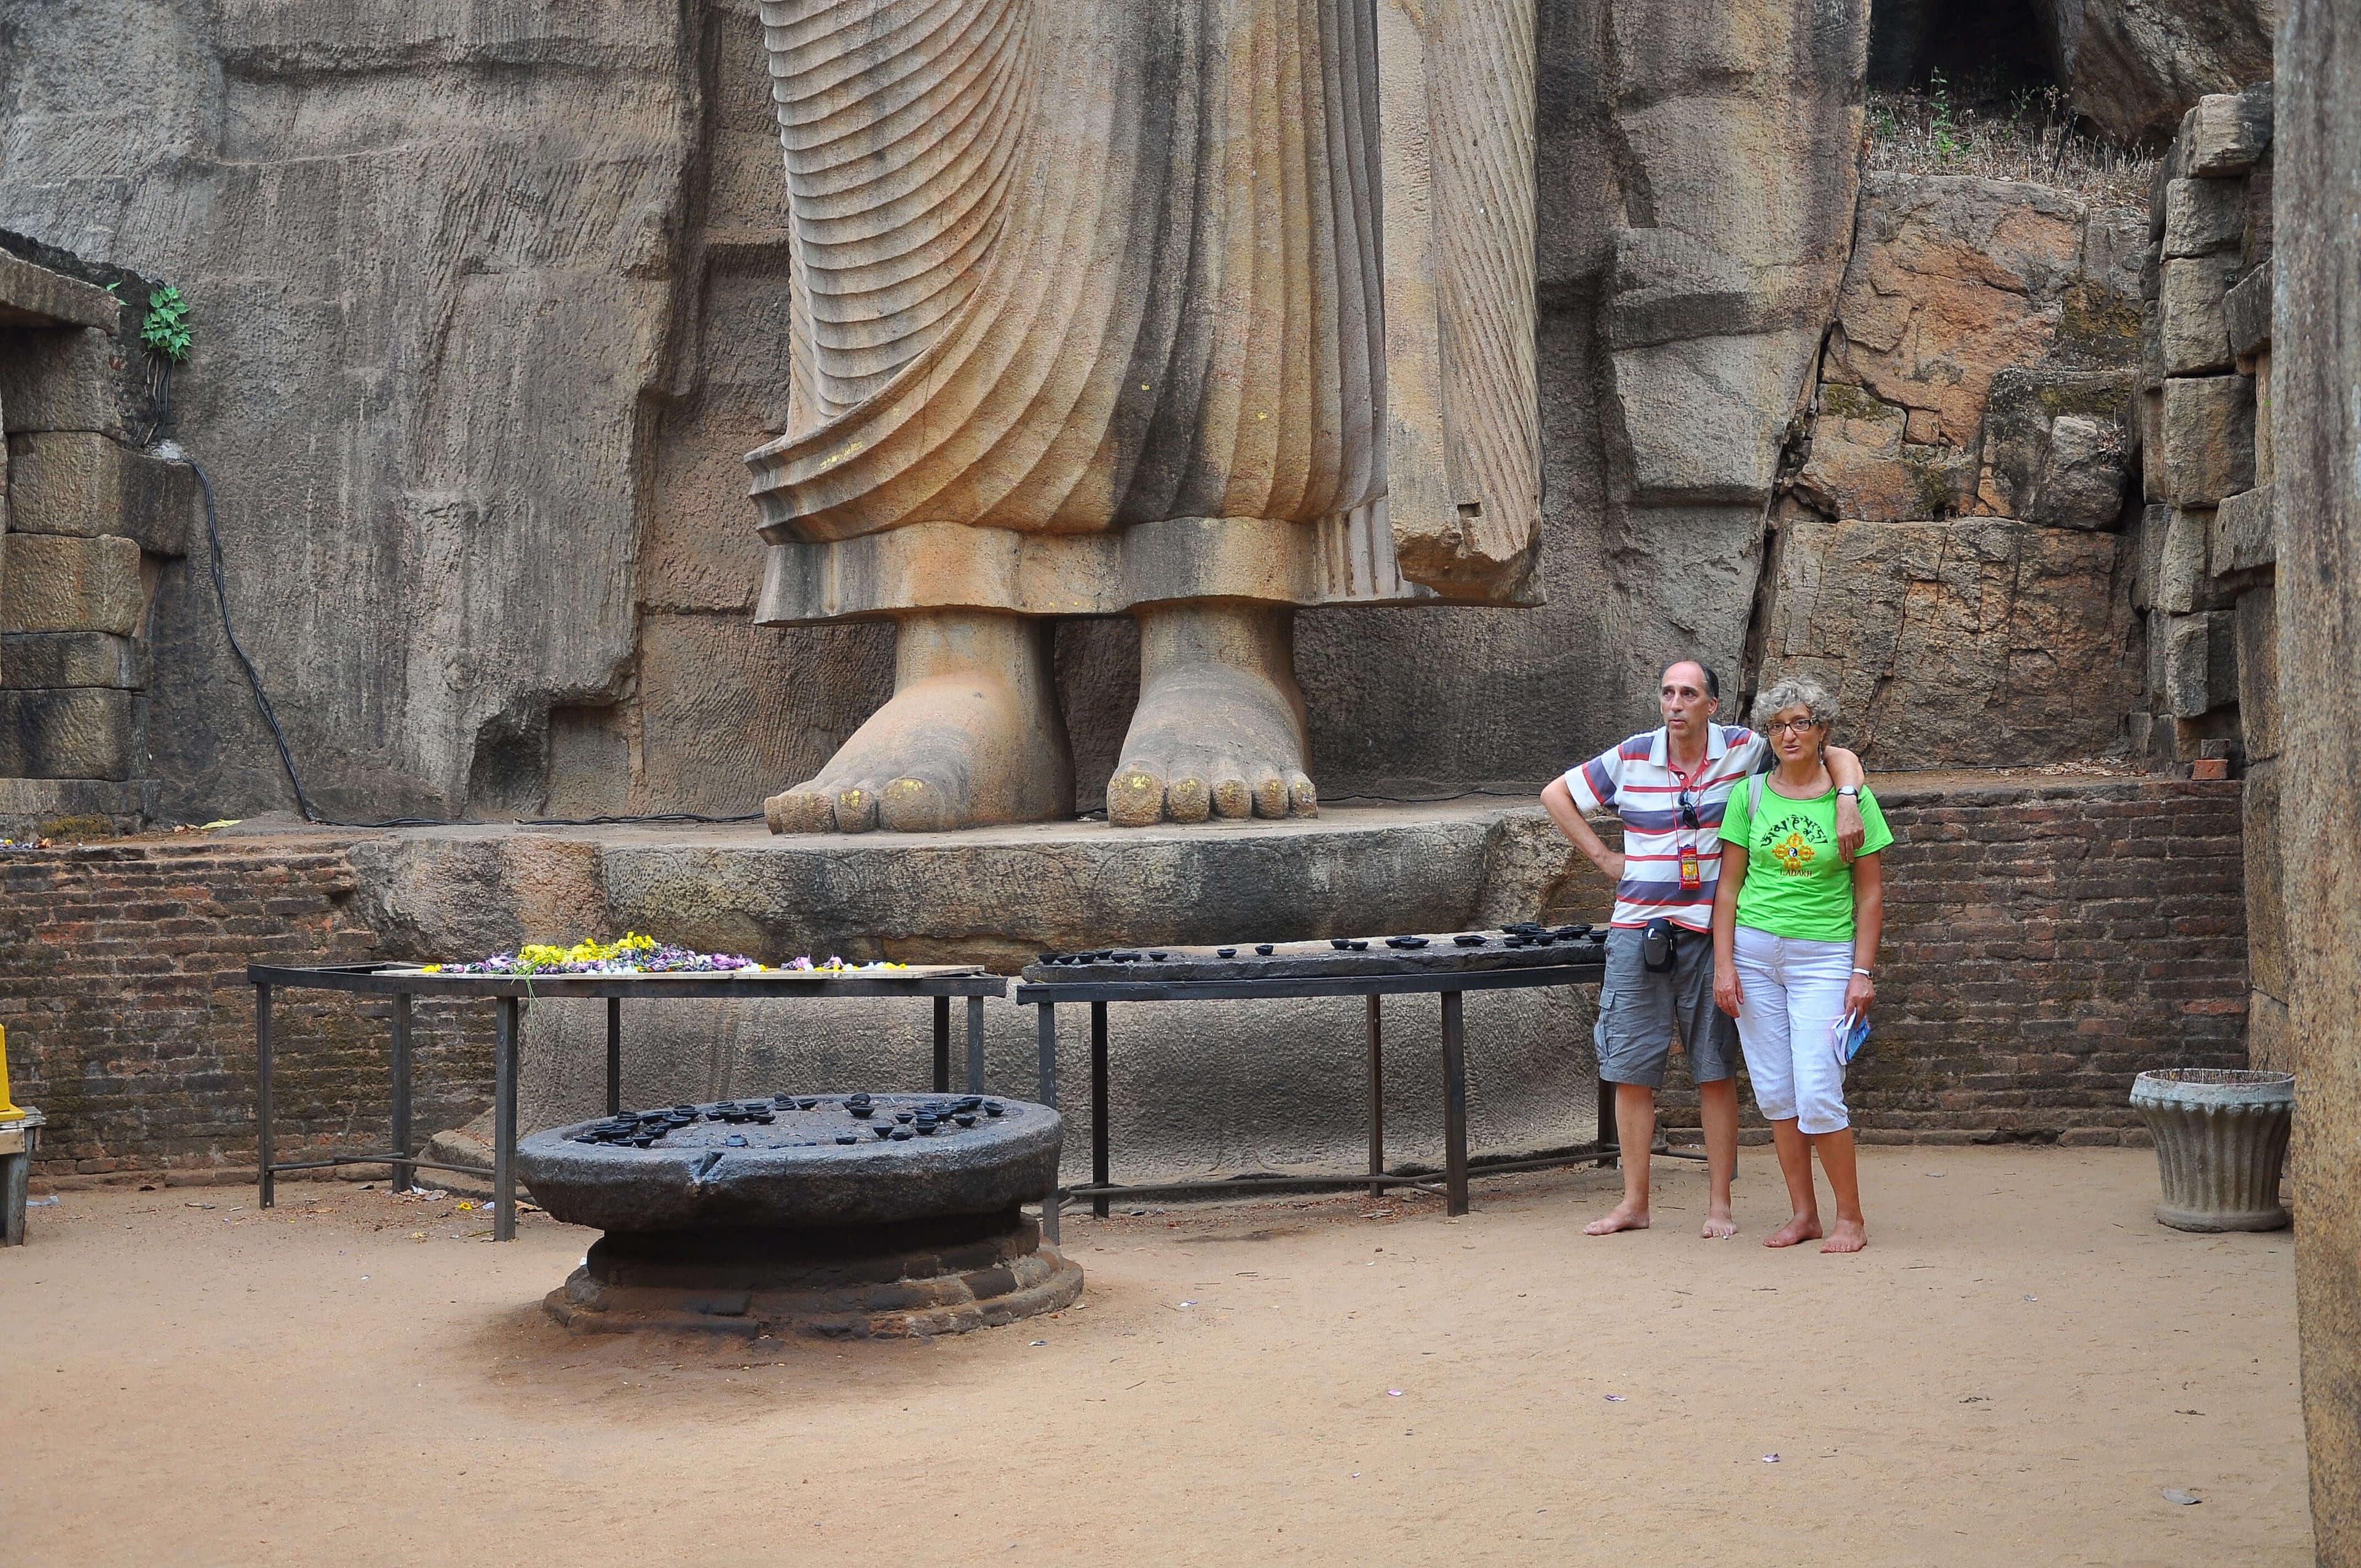 السائح يحصل على صورة بالقرب من أطول تمثال لبوذا أفوكانا في أنورادابورا في سريلانكا